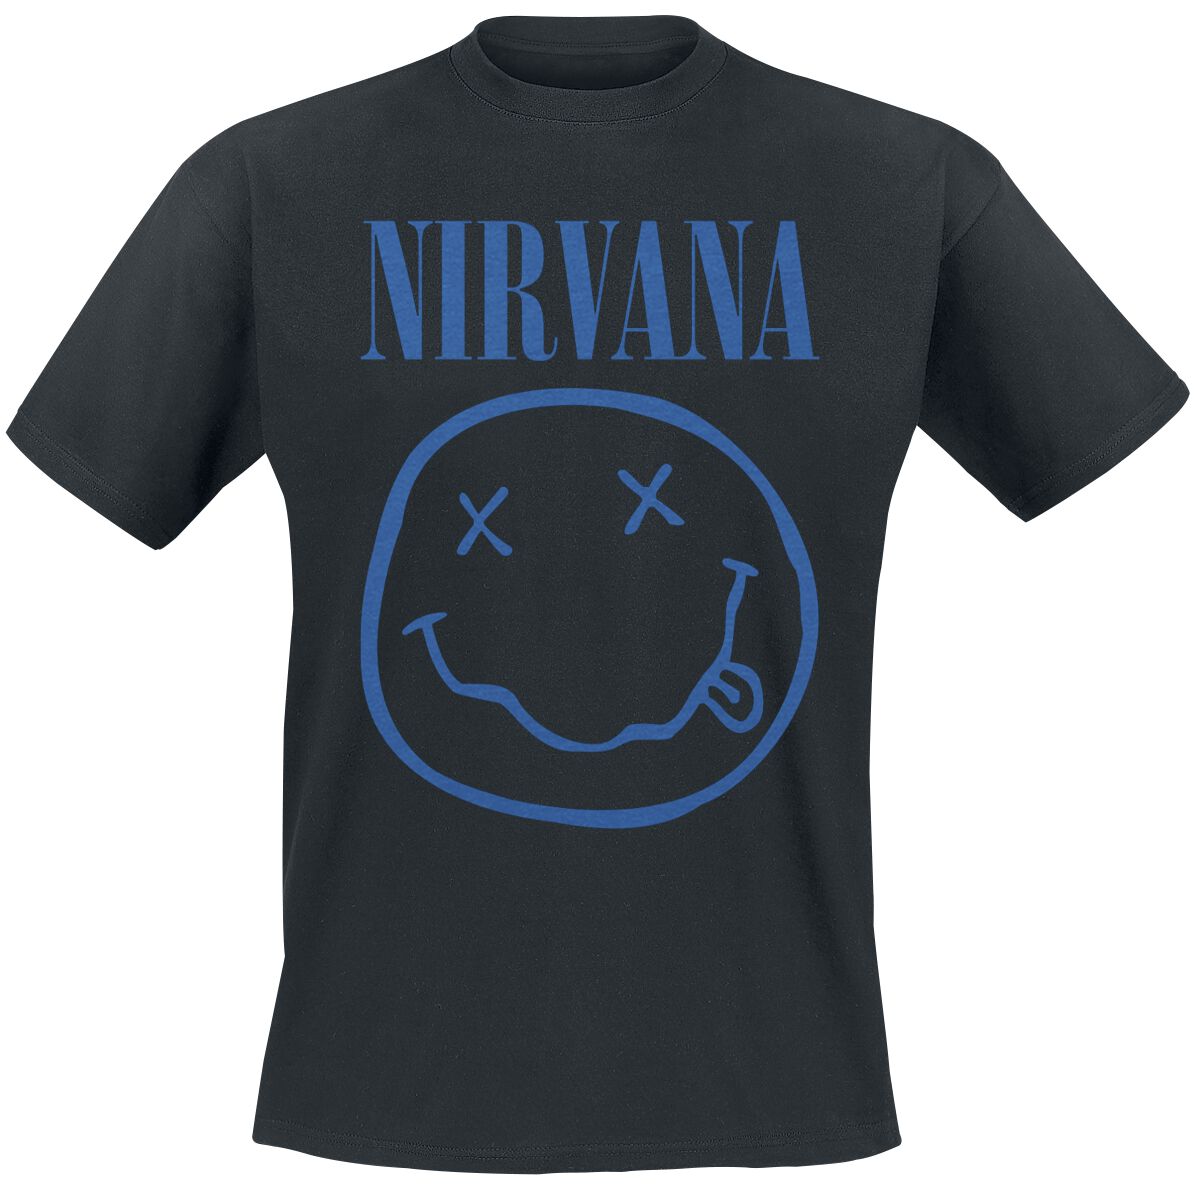 Nirvana T-Shirt - Blue Smiley - S bis XXL - für Männer - Größe S - schwarz  - Lizenziertes Merchandise!